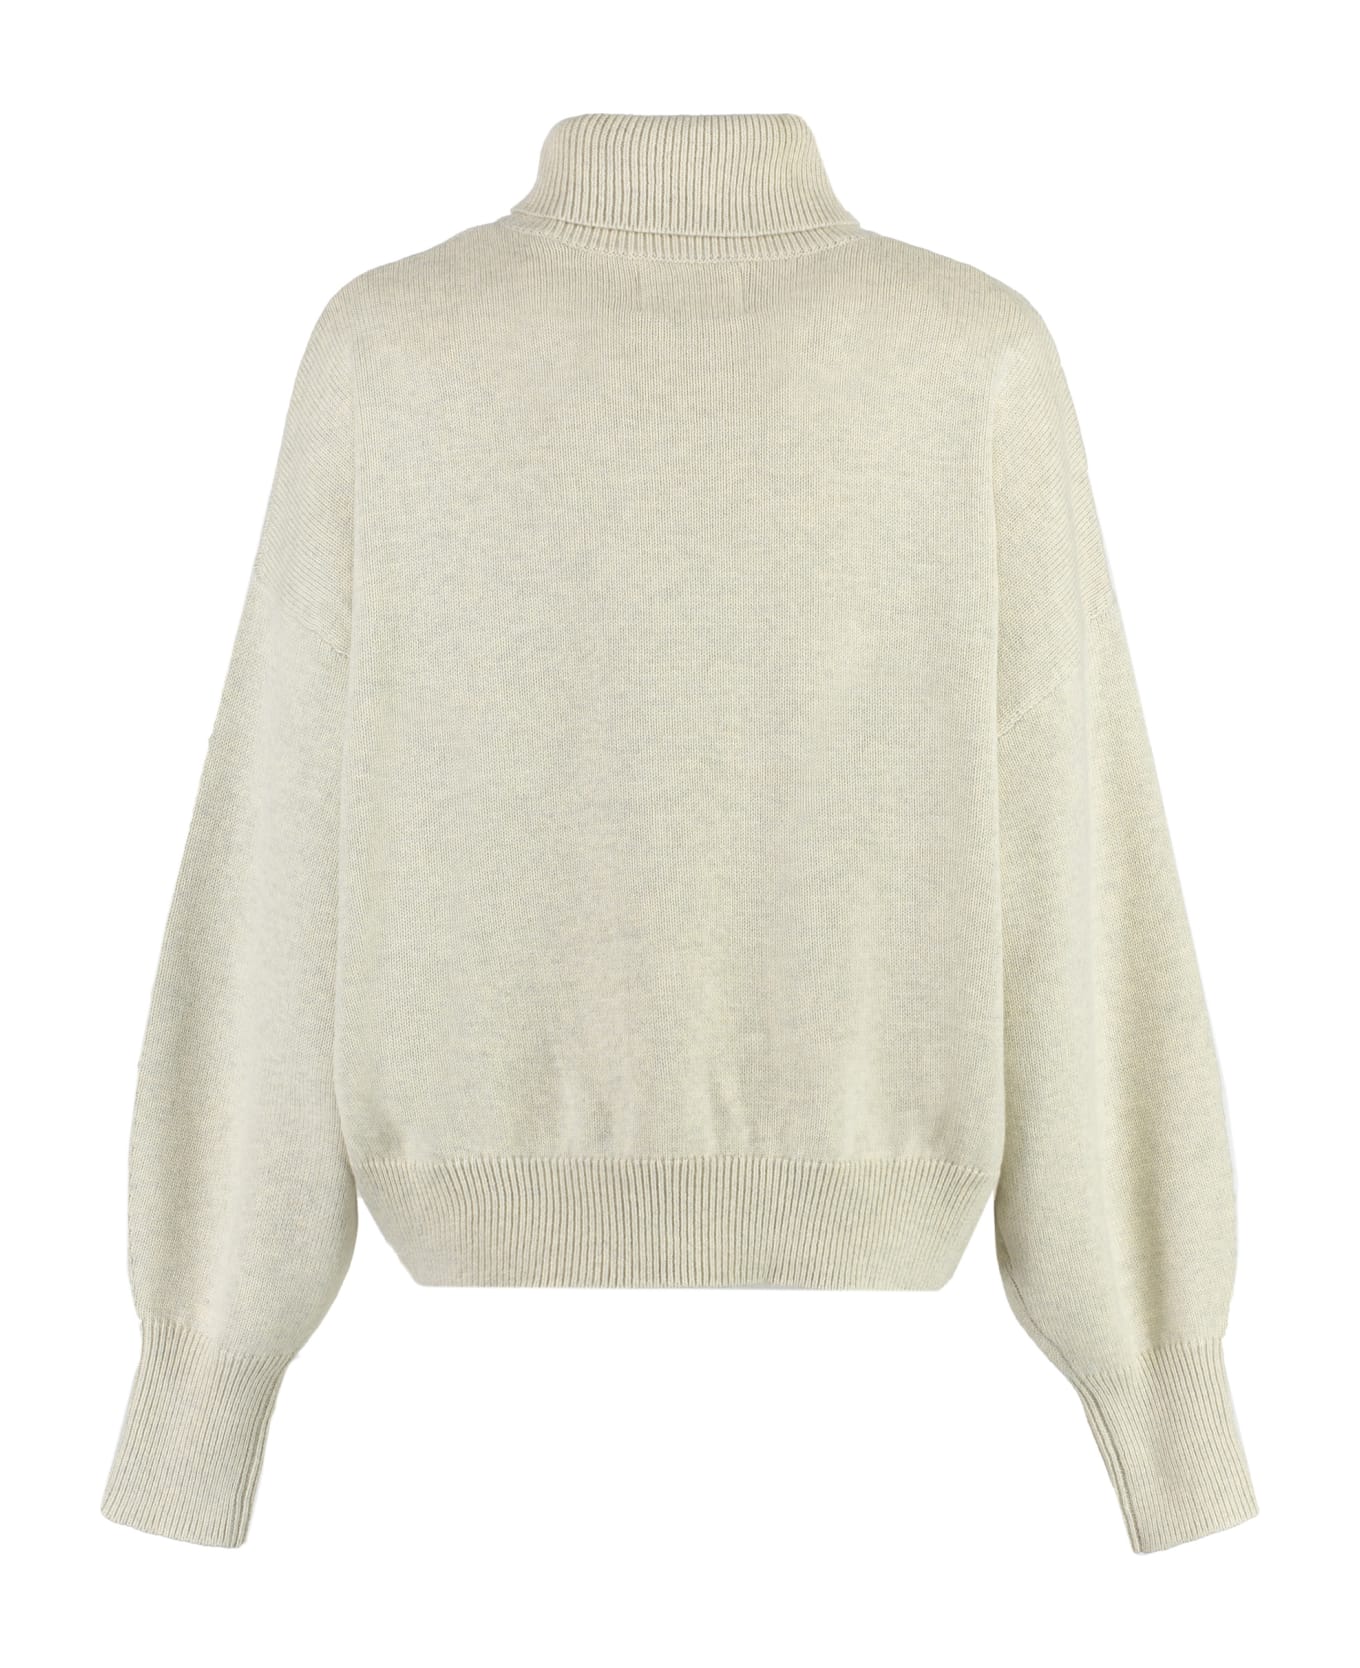 Isabel Marant Nash Sweater - Light Grey